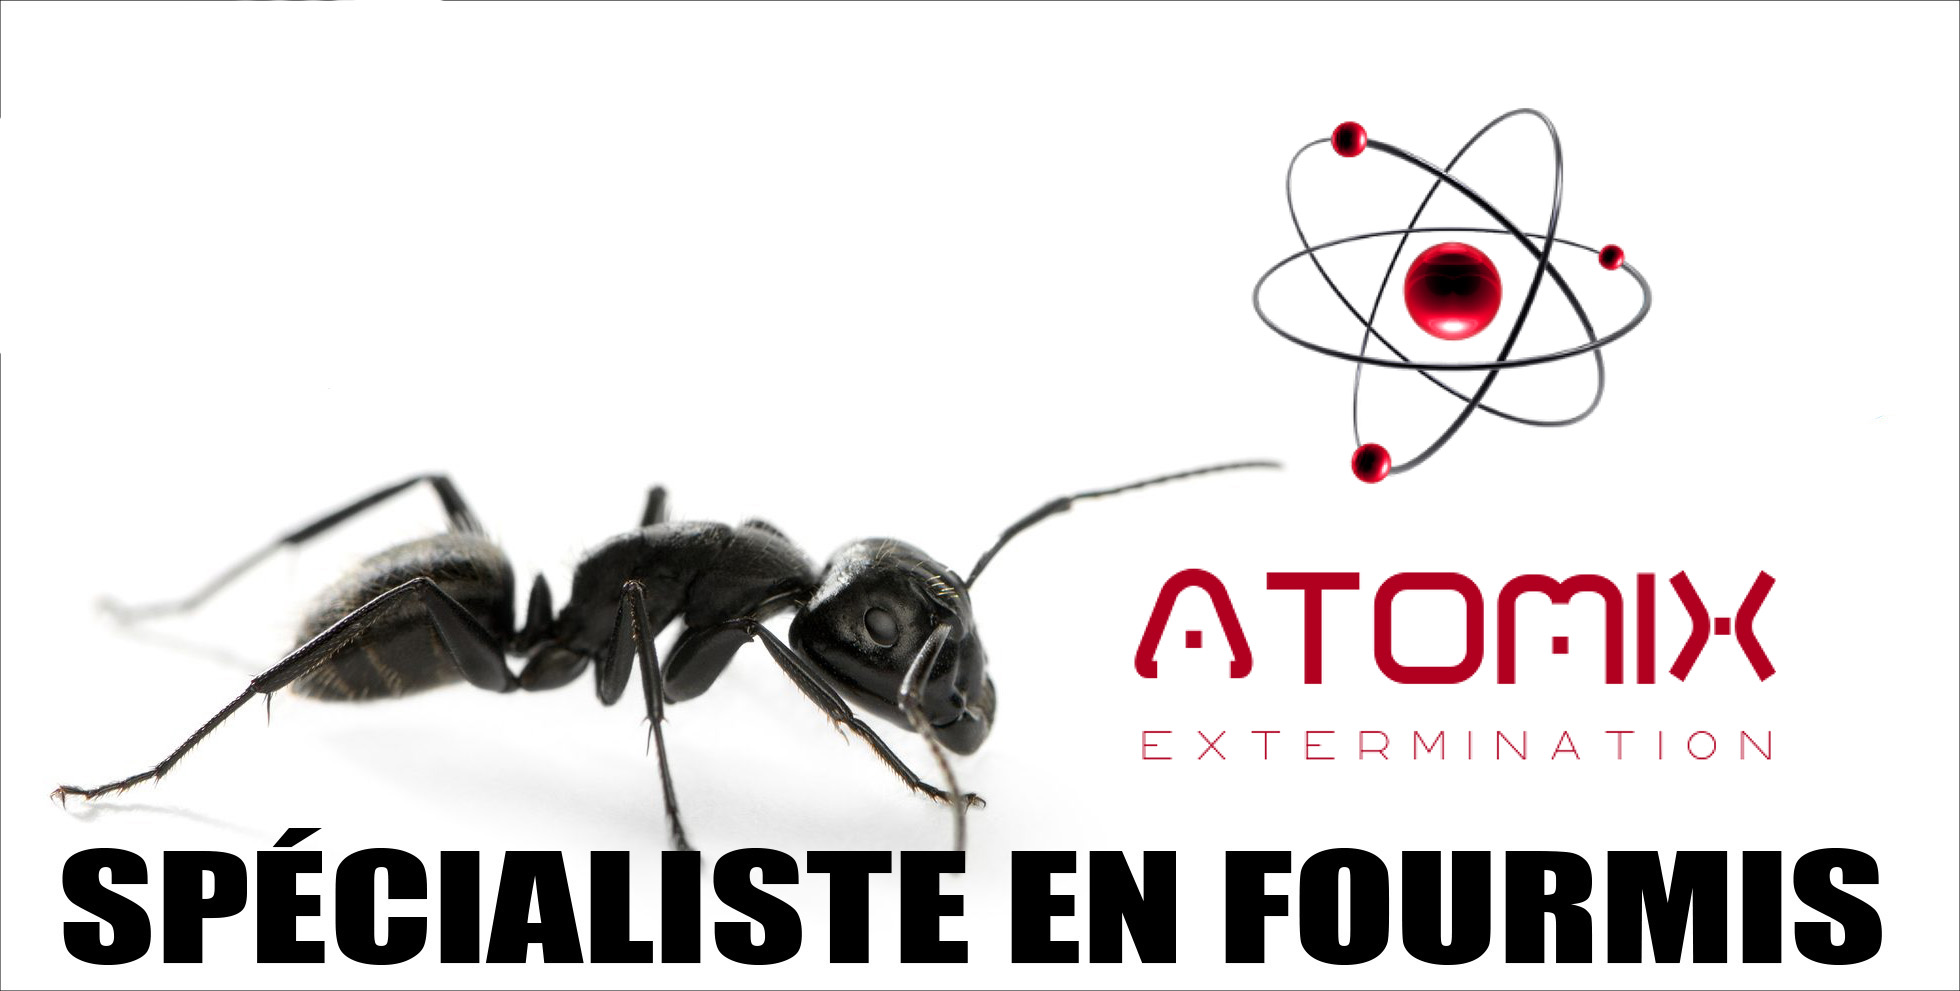 Atomix EXTERMINATION votre exterminateur 1-866-928-7172